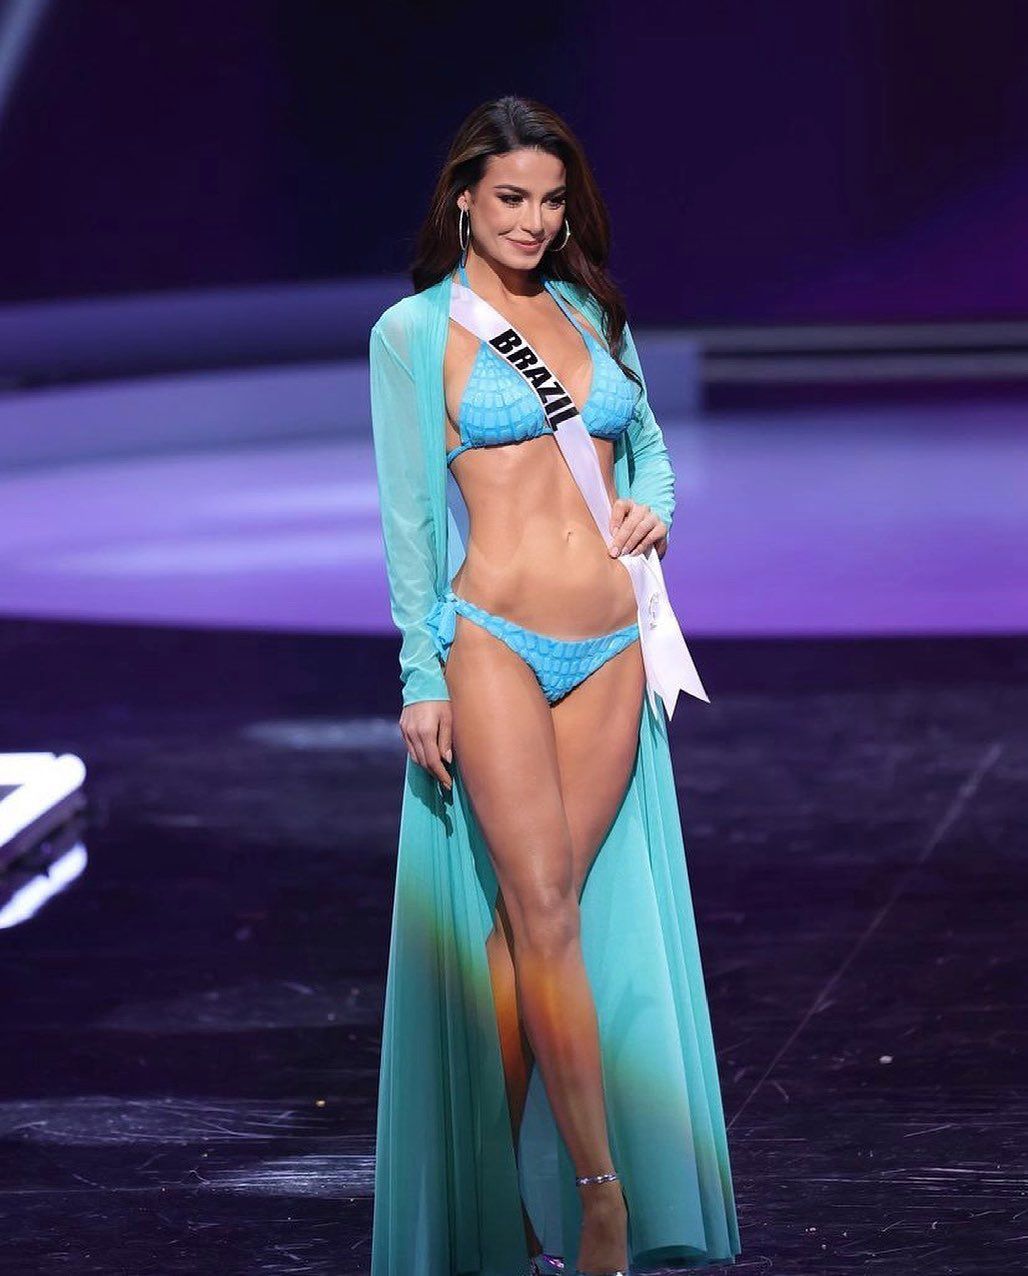 Julia Gama no Miss Universo: "Concursos de miss eram e continuam sendo o ápice da performance de feminilidade, do que se espera que a mulher ‘se torne’" (Reprodução)